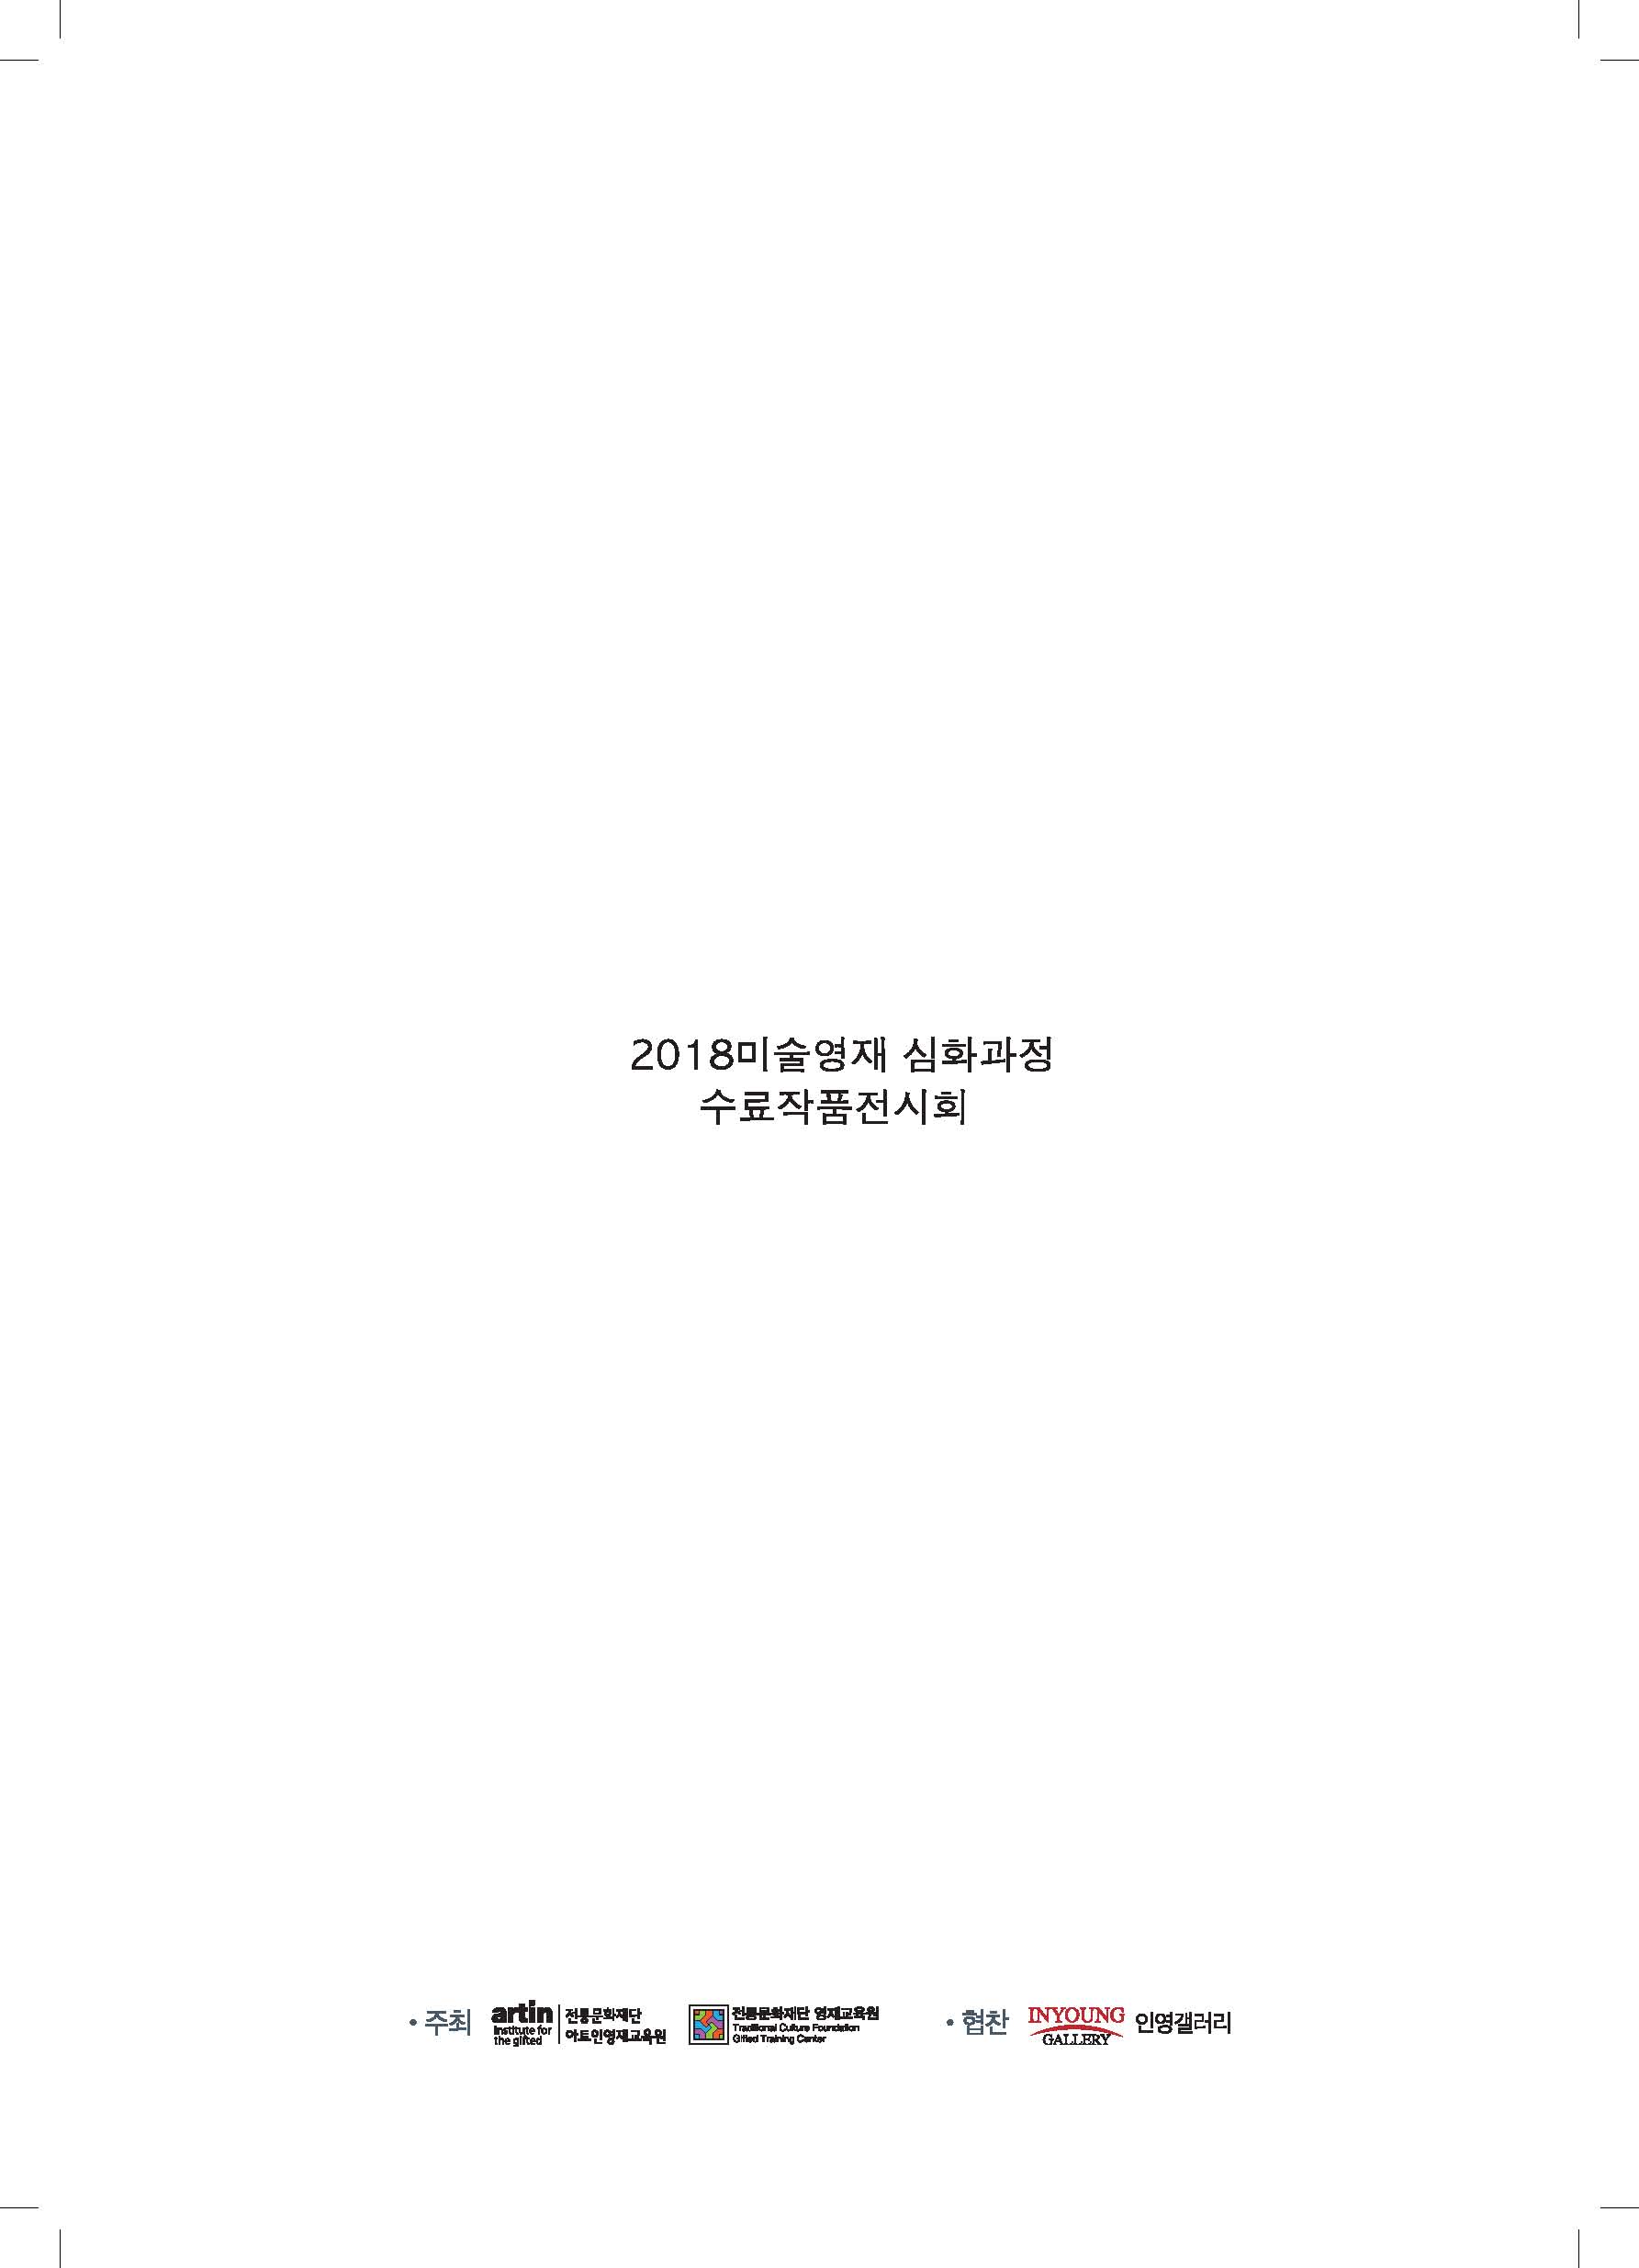 2018_미술영재_브로슈어(인쇄본) 합본_페이지_24.jpg